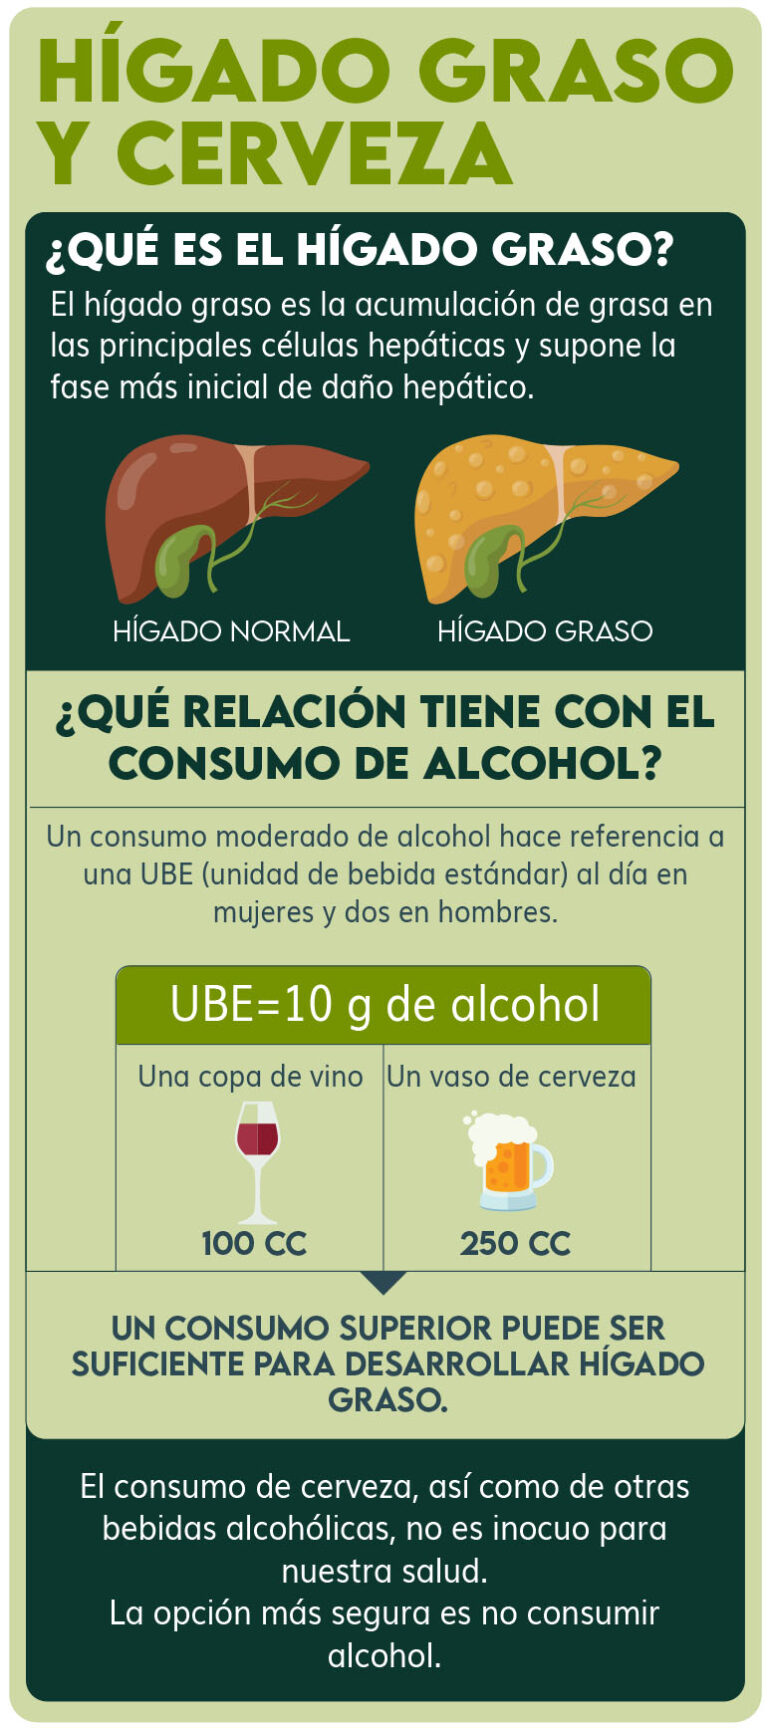 Hígado graso: ¿Cómo afecta el consumo de cerveza?